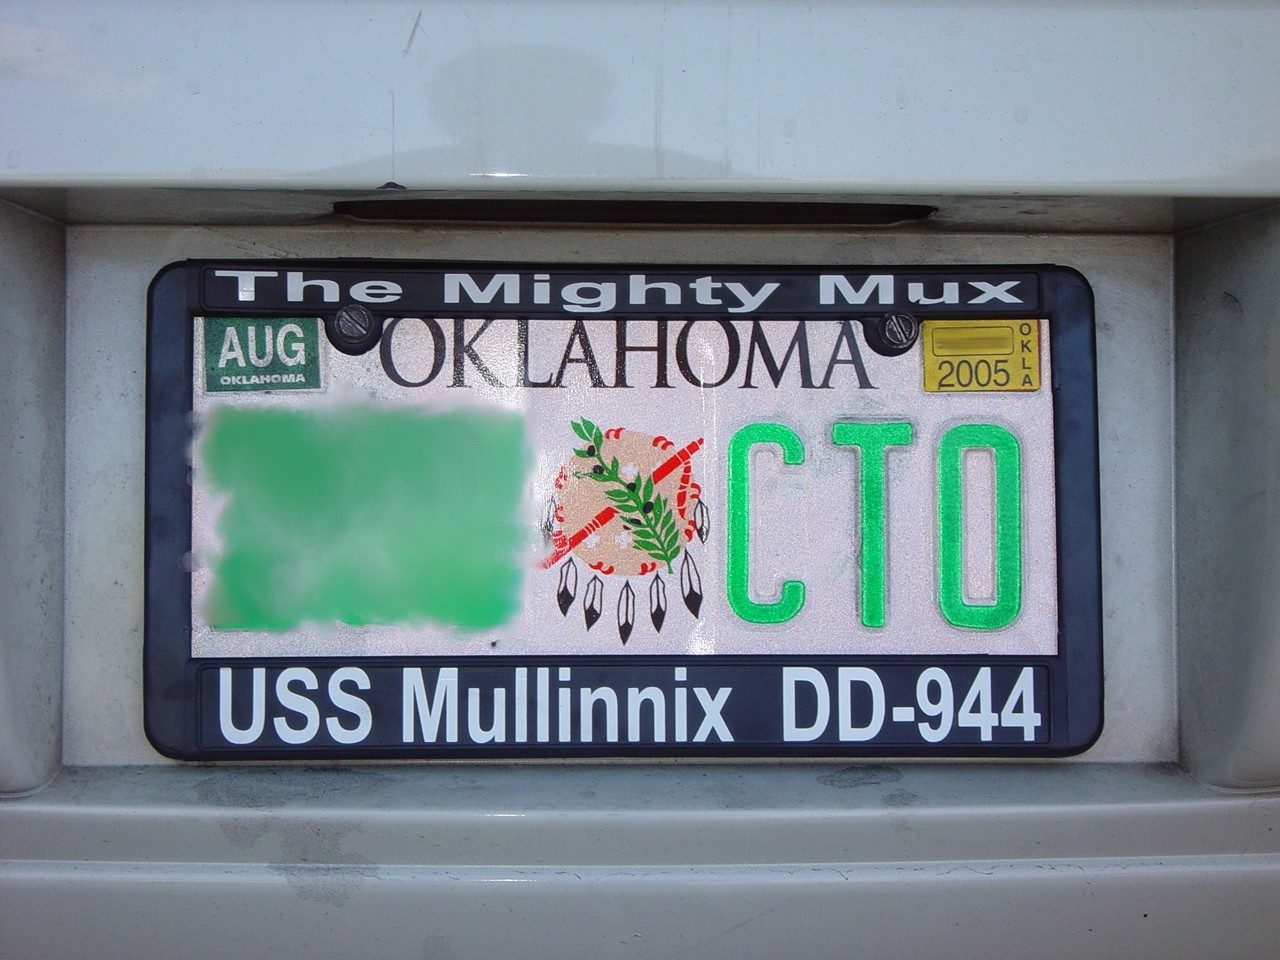 Mullinnix License Plate Frame